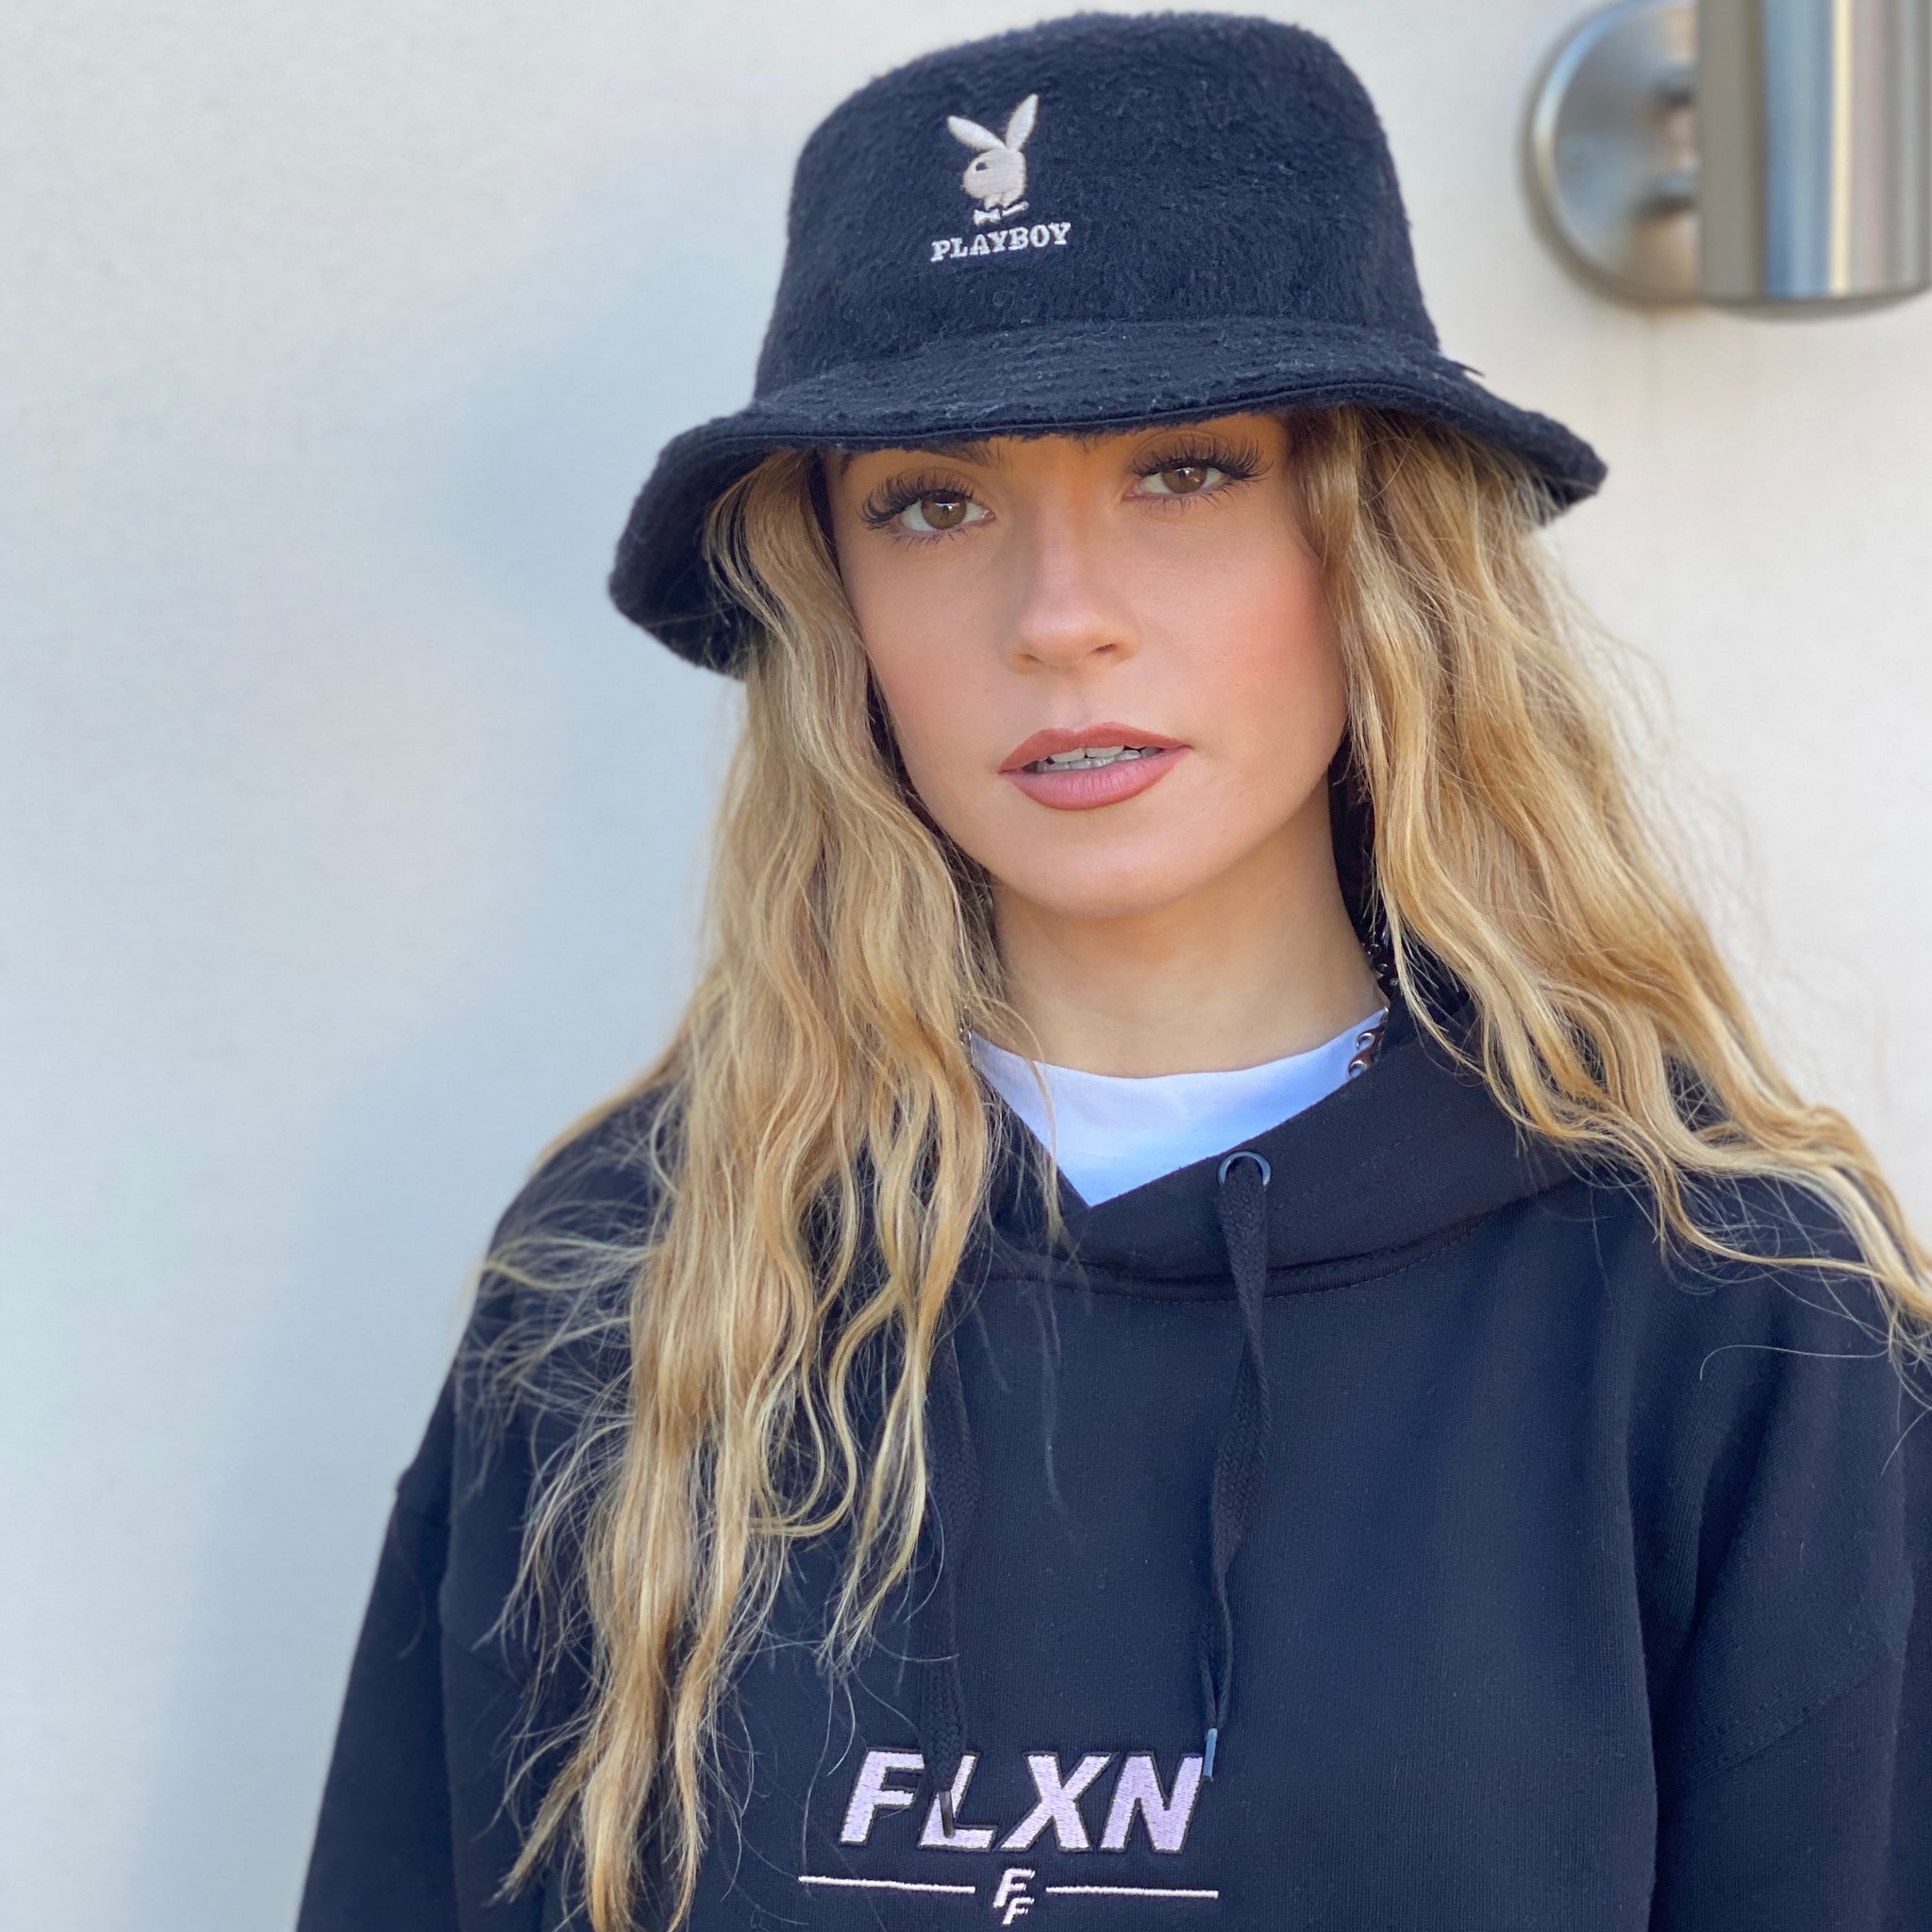 FLXN Hooded Sweatshirt - Black - FLXNfashion